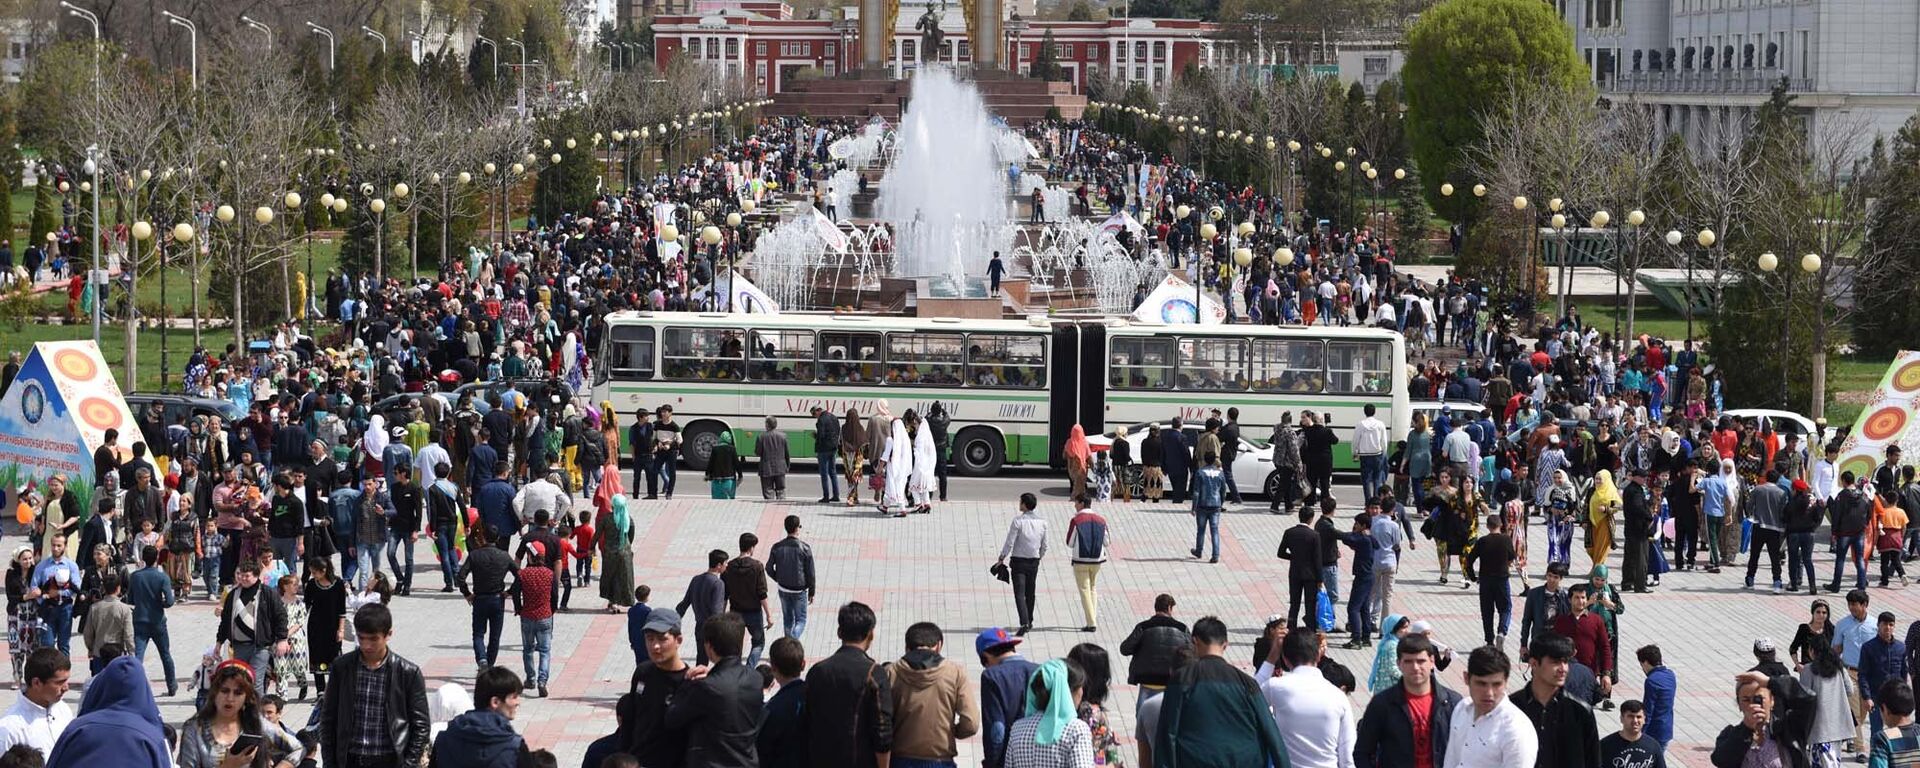 Праздничные мероприятия в праздник Навруз в Душанбе - Sputnik Таджикистан, 1920, 12.02.2021